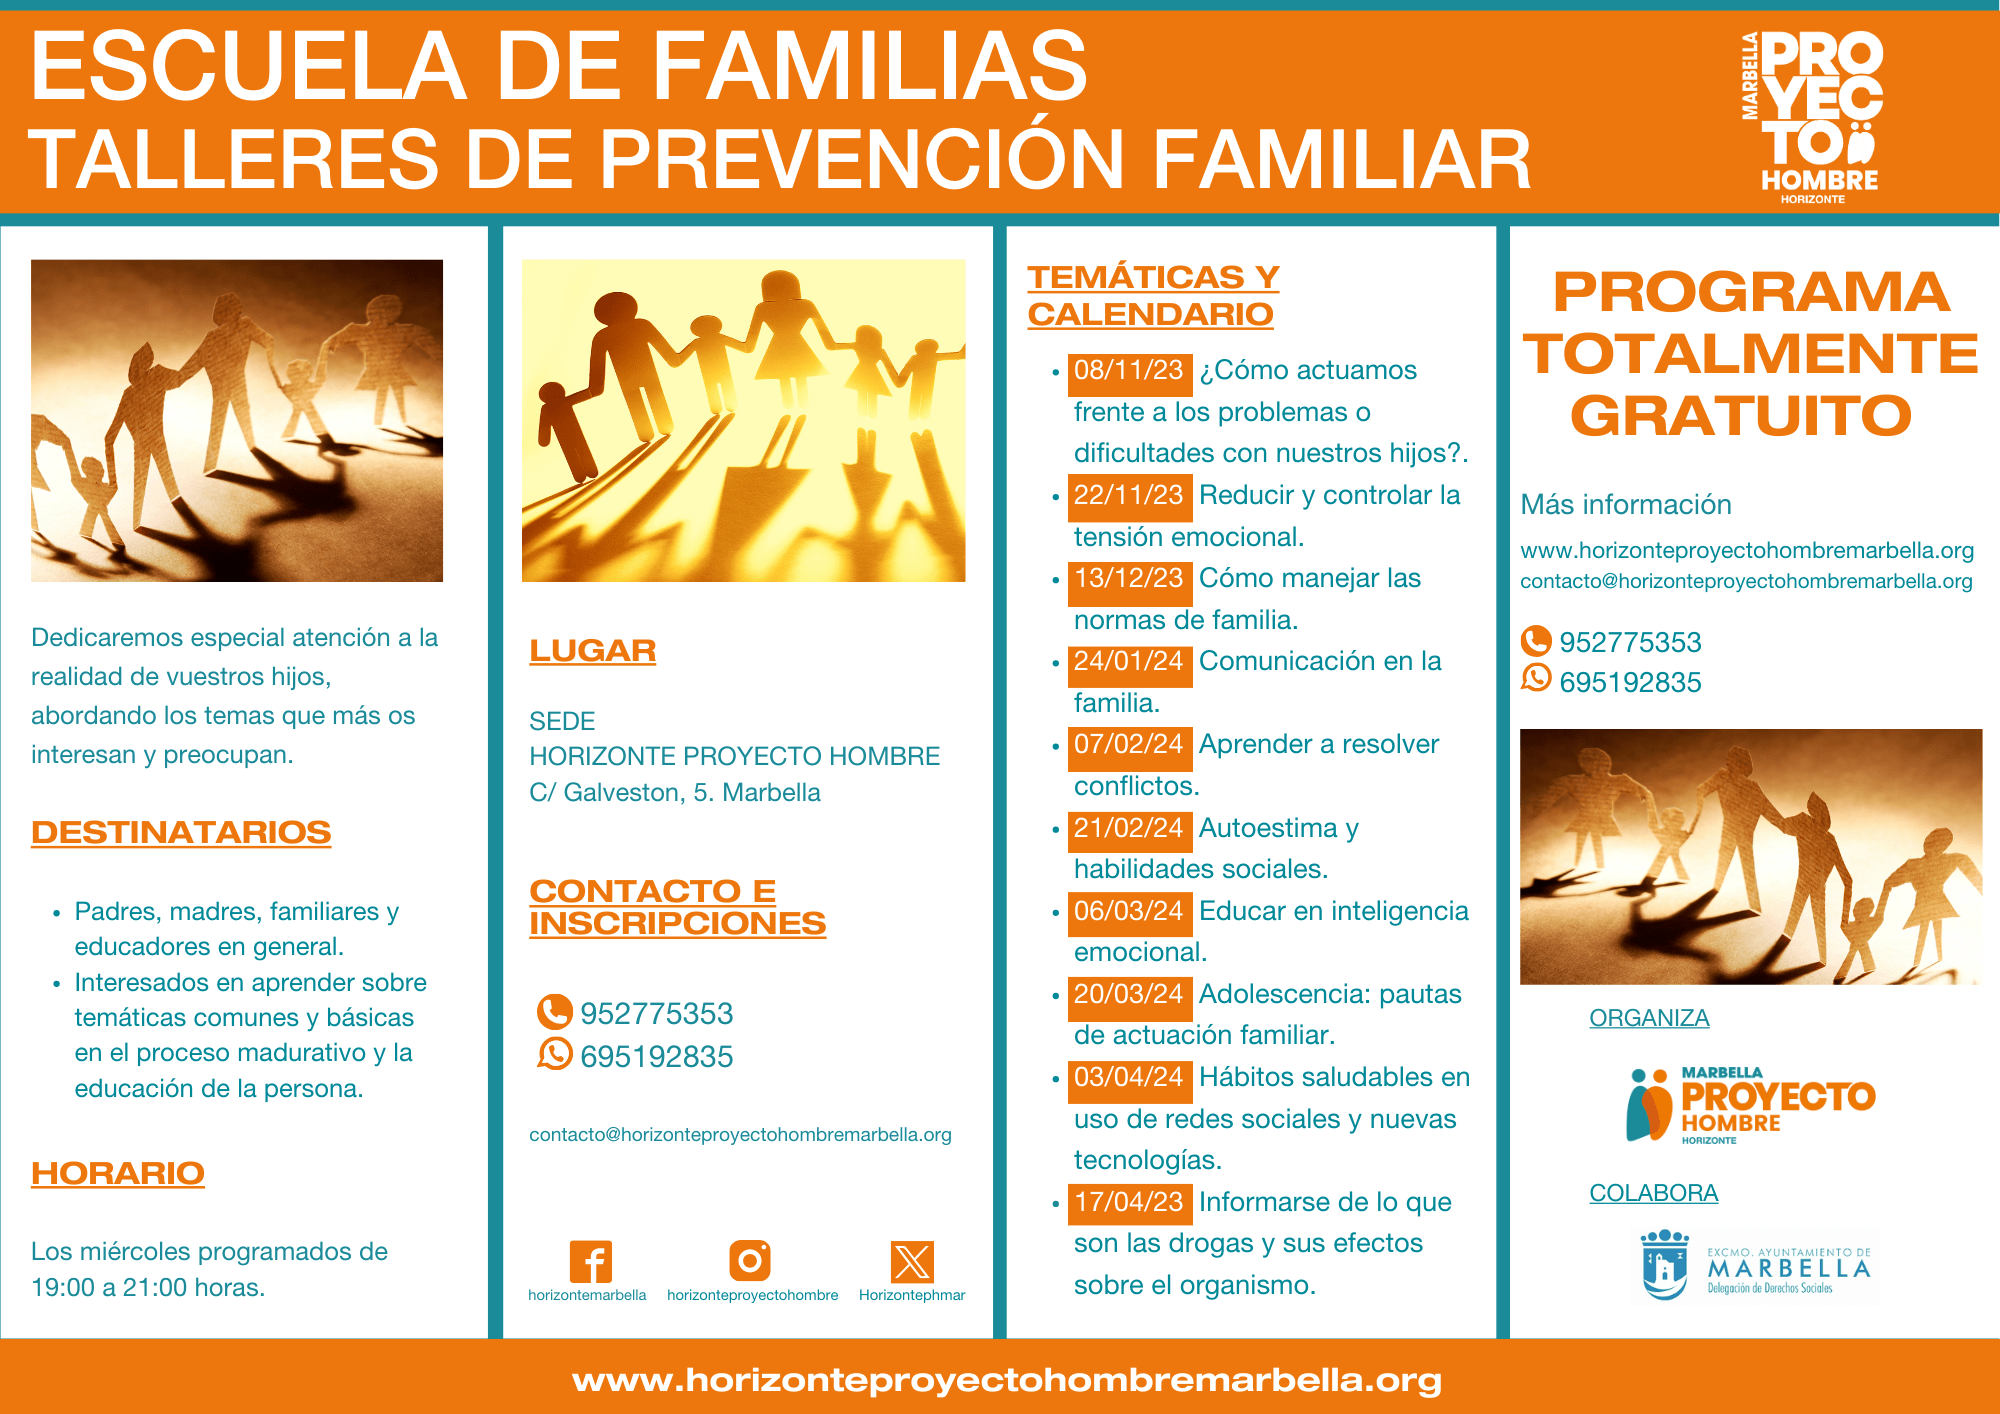 Nueva edición gratuita del Programa de Prevención Familiar de la asociación Horizonte